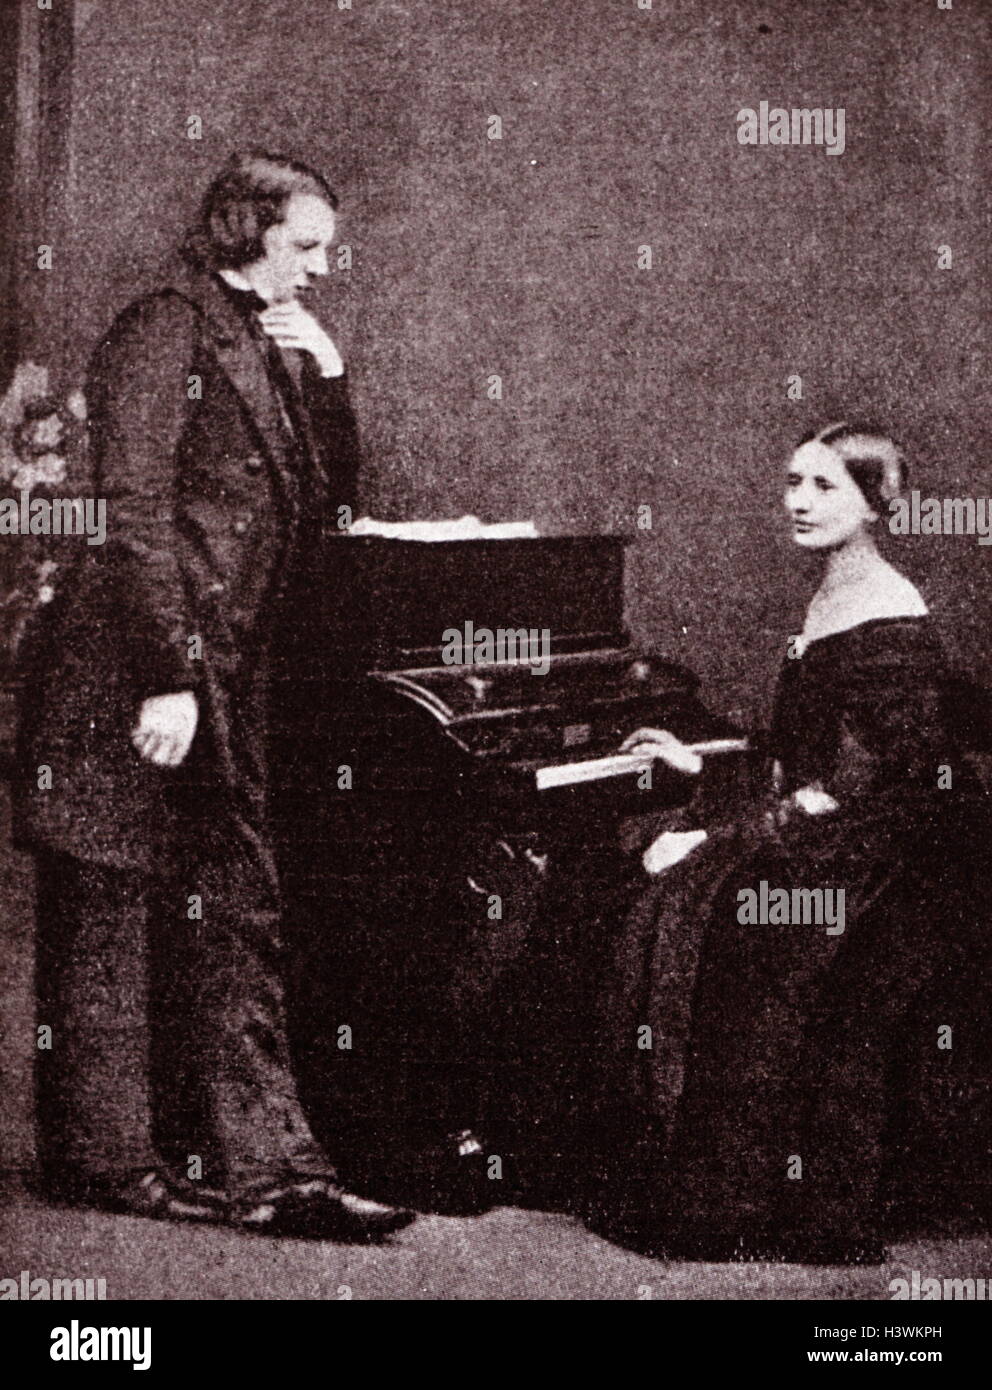 Porträt des Komponisten Robert Schumann (1810-1856) und seine Frau, Musiker, Clara Schumann (1819-1896). Vom 19. Jahrhundert Stockfoto